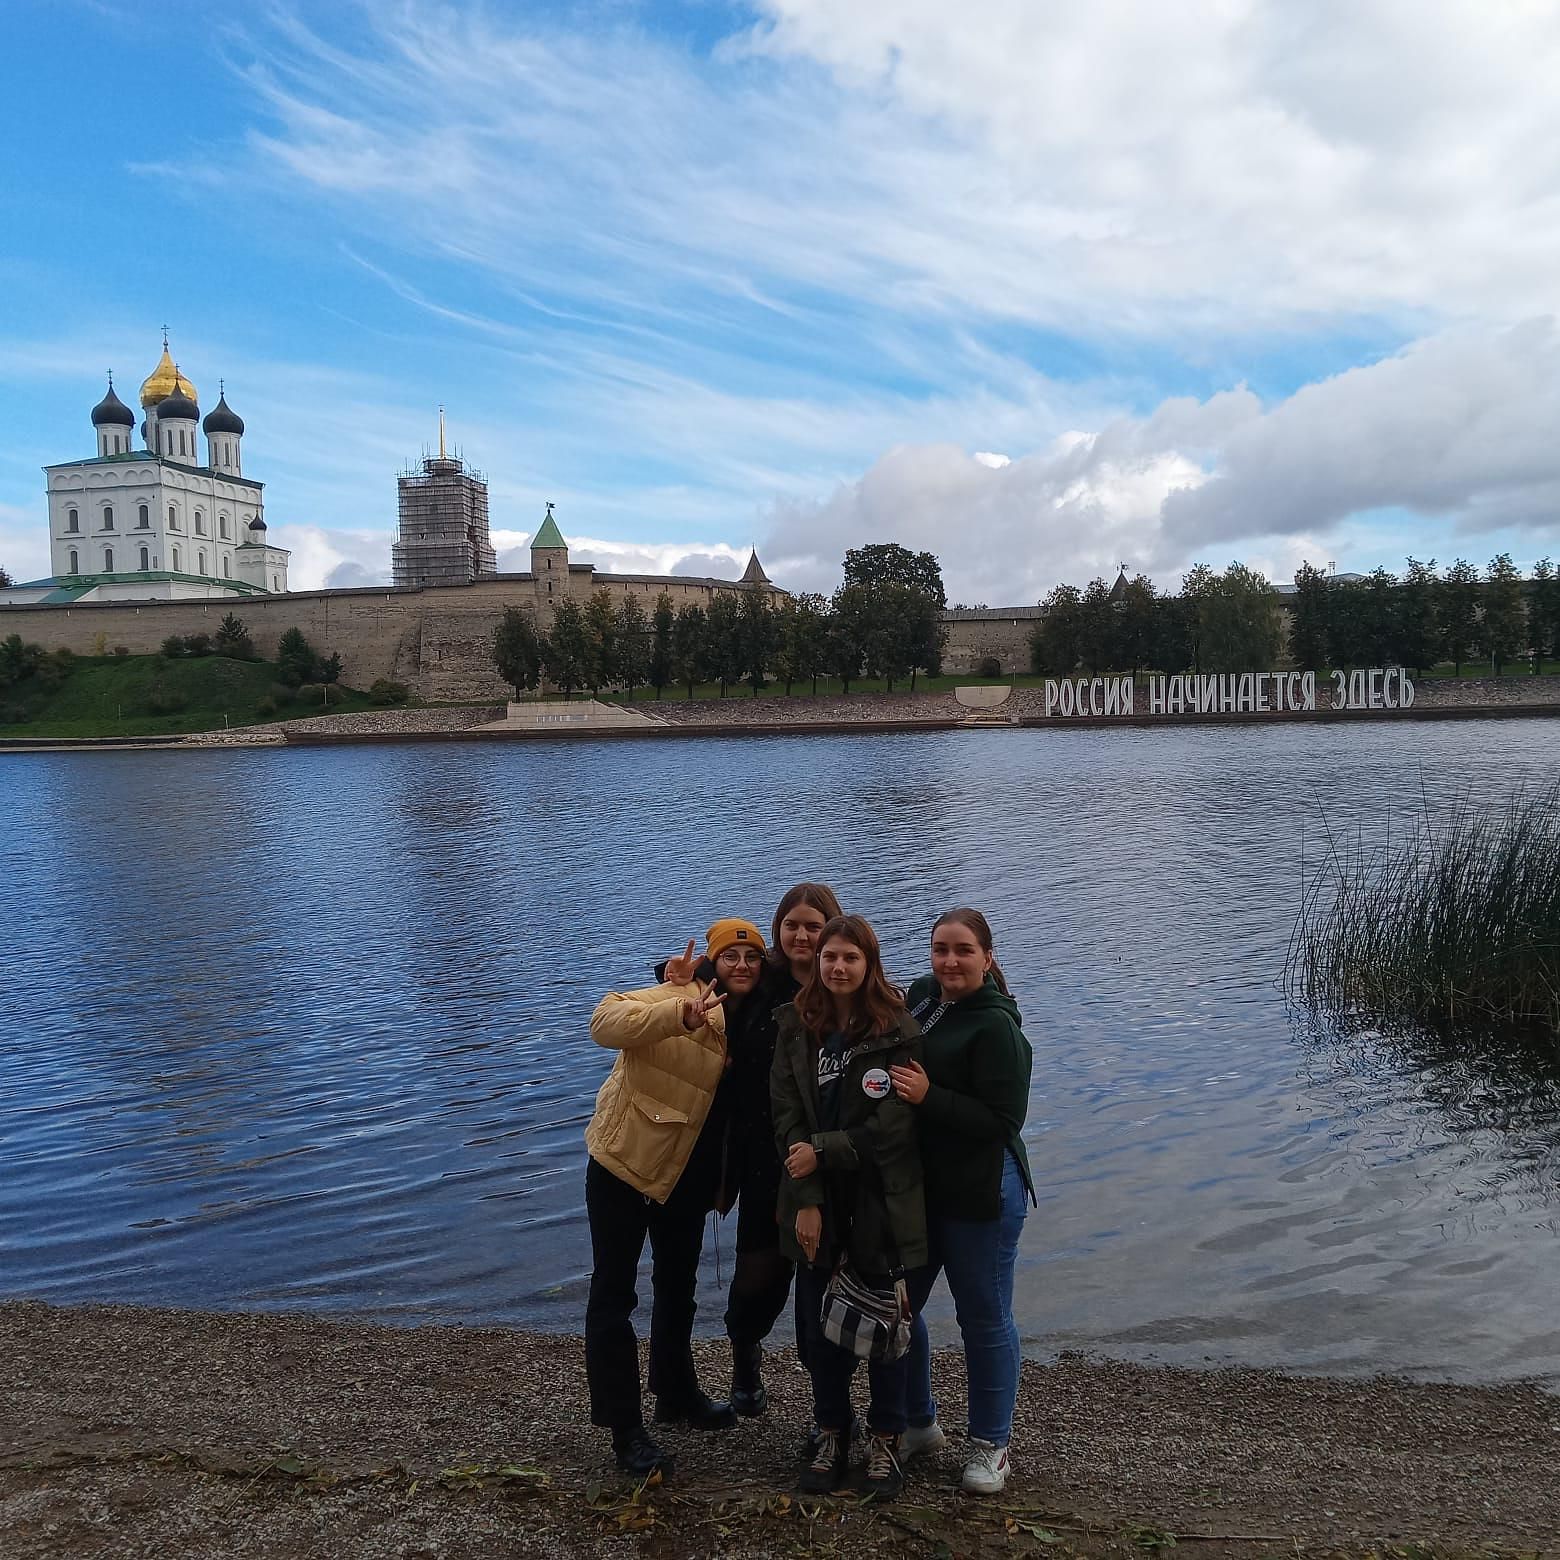 Как псковские лапти к новгородским чуням в гости ходили, 4 дня (тур из Москвы/из Санкт-Петербурга).